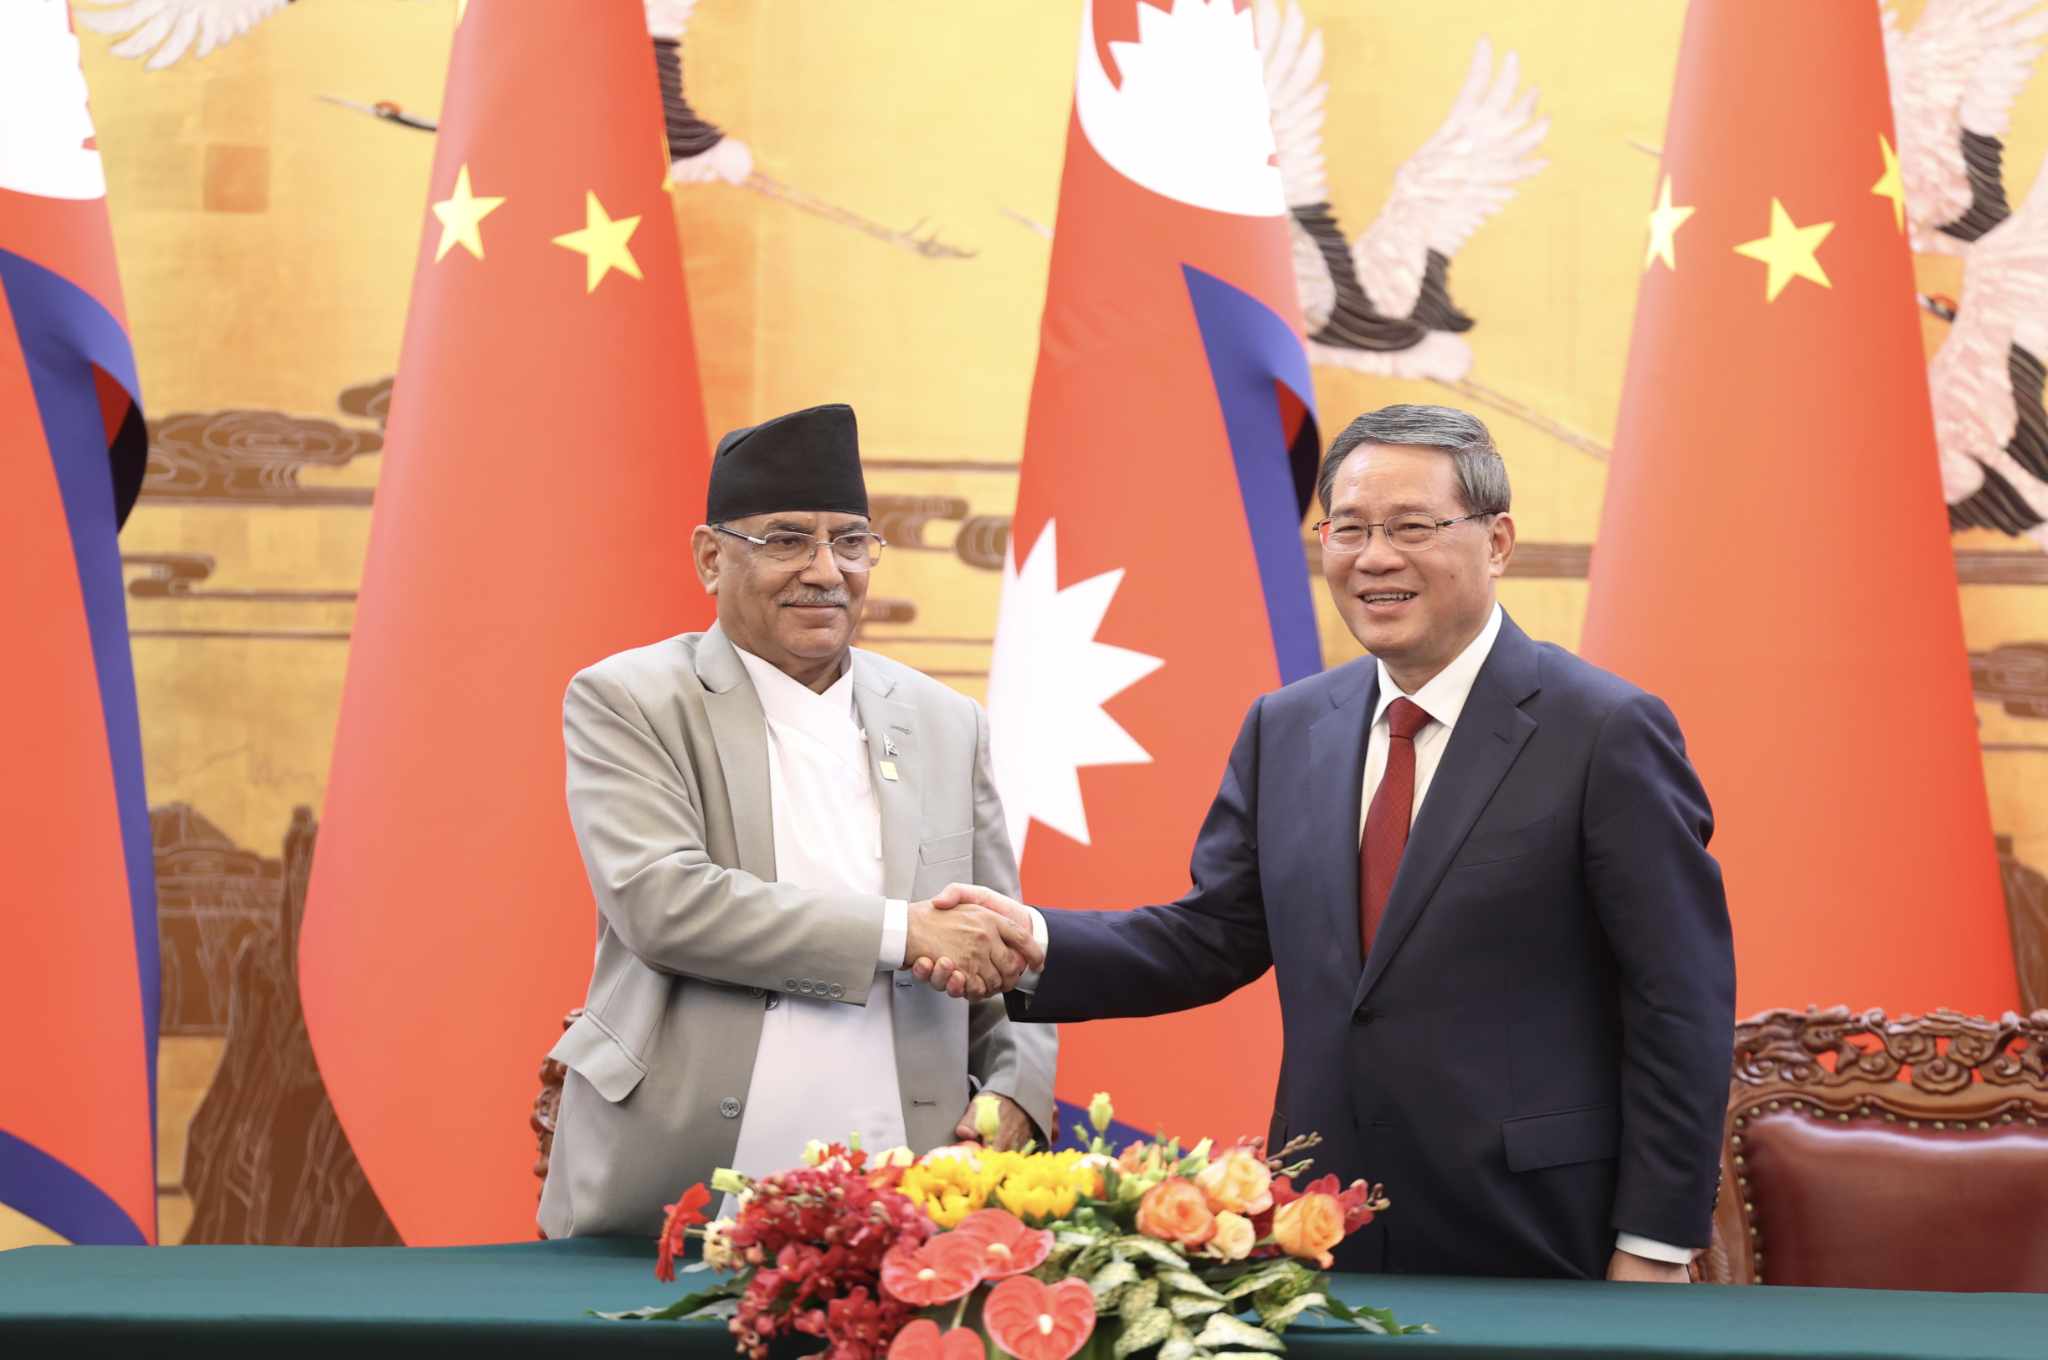 नेपाल र चीनबीच १३ बुँदे समझदारी पत्रमा हस्ताक्षर, के-के भए सहमति?